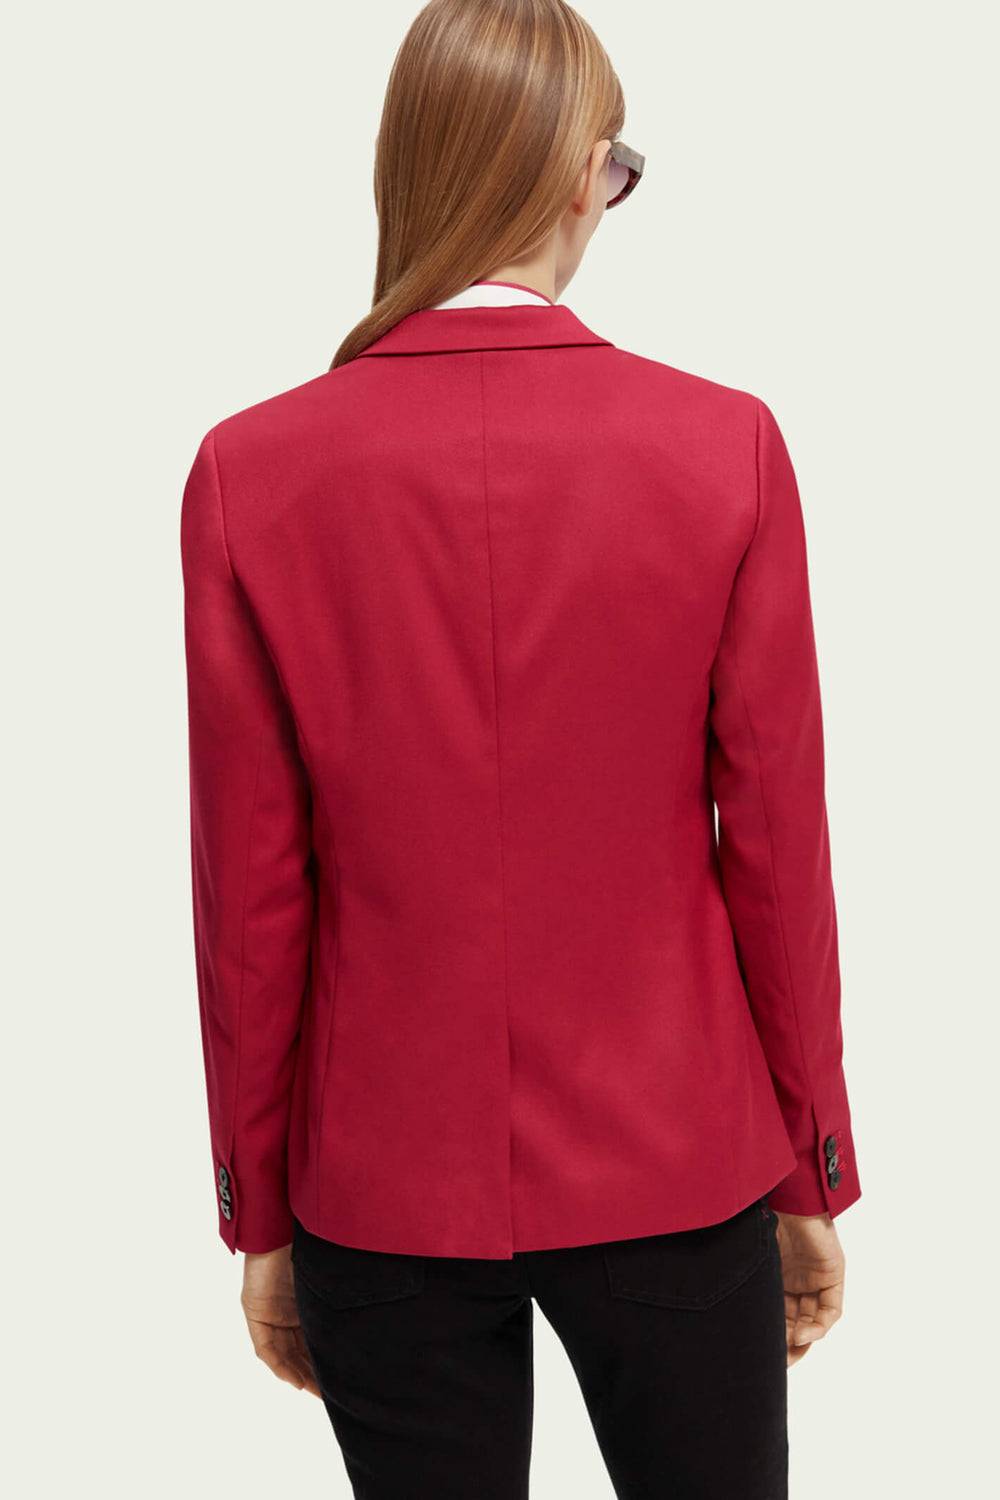 Scotch & Soda 172084 Cherry Pie Red Classic Tailored Blazer Jacket - Olivia Grace Fashion